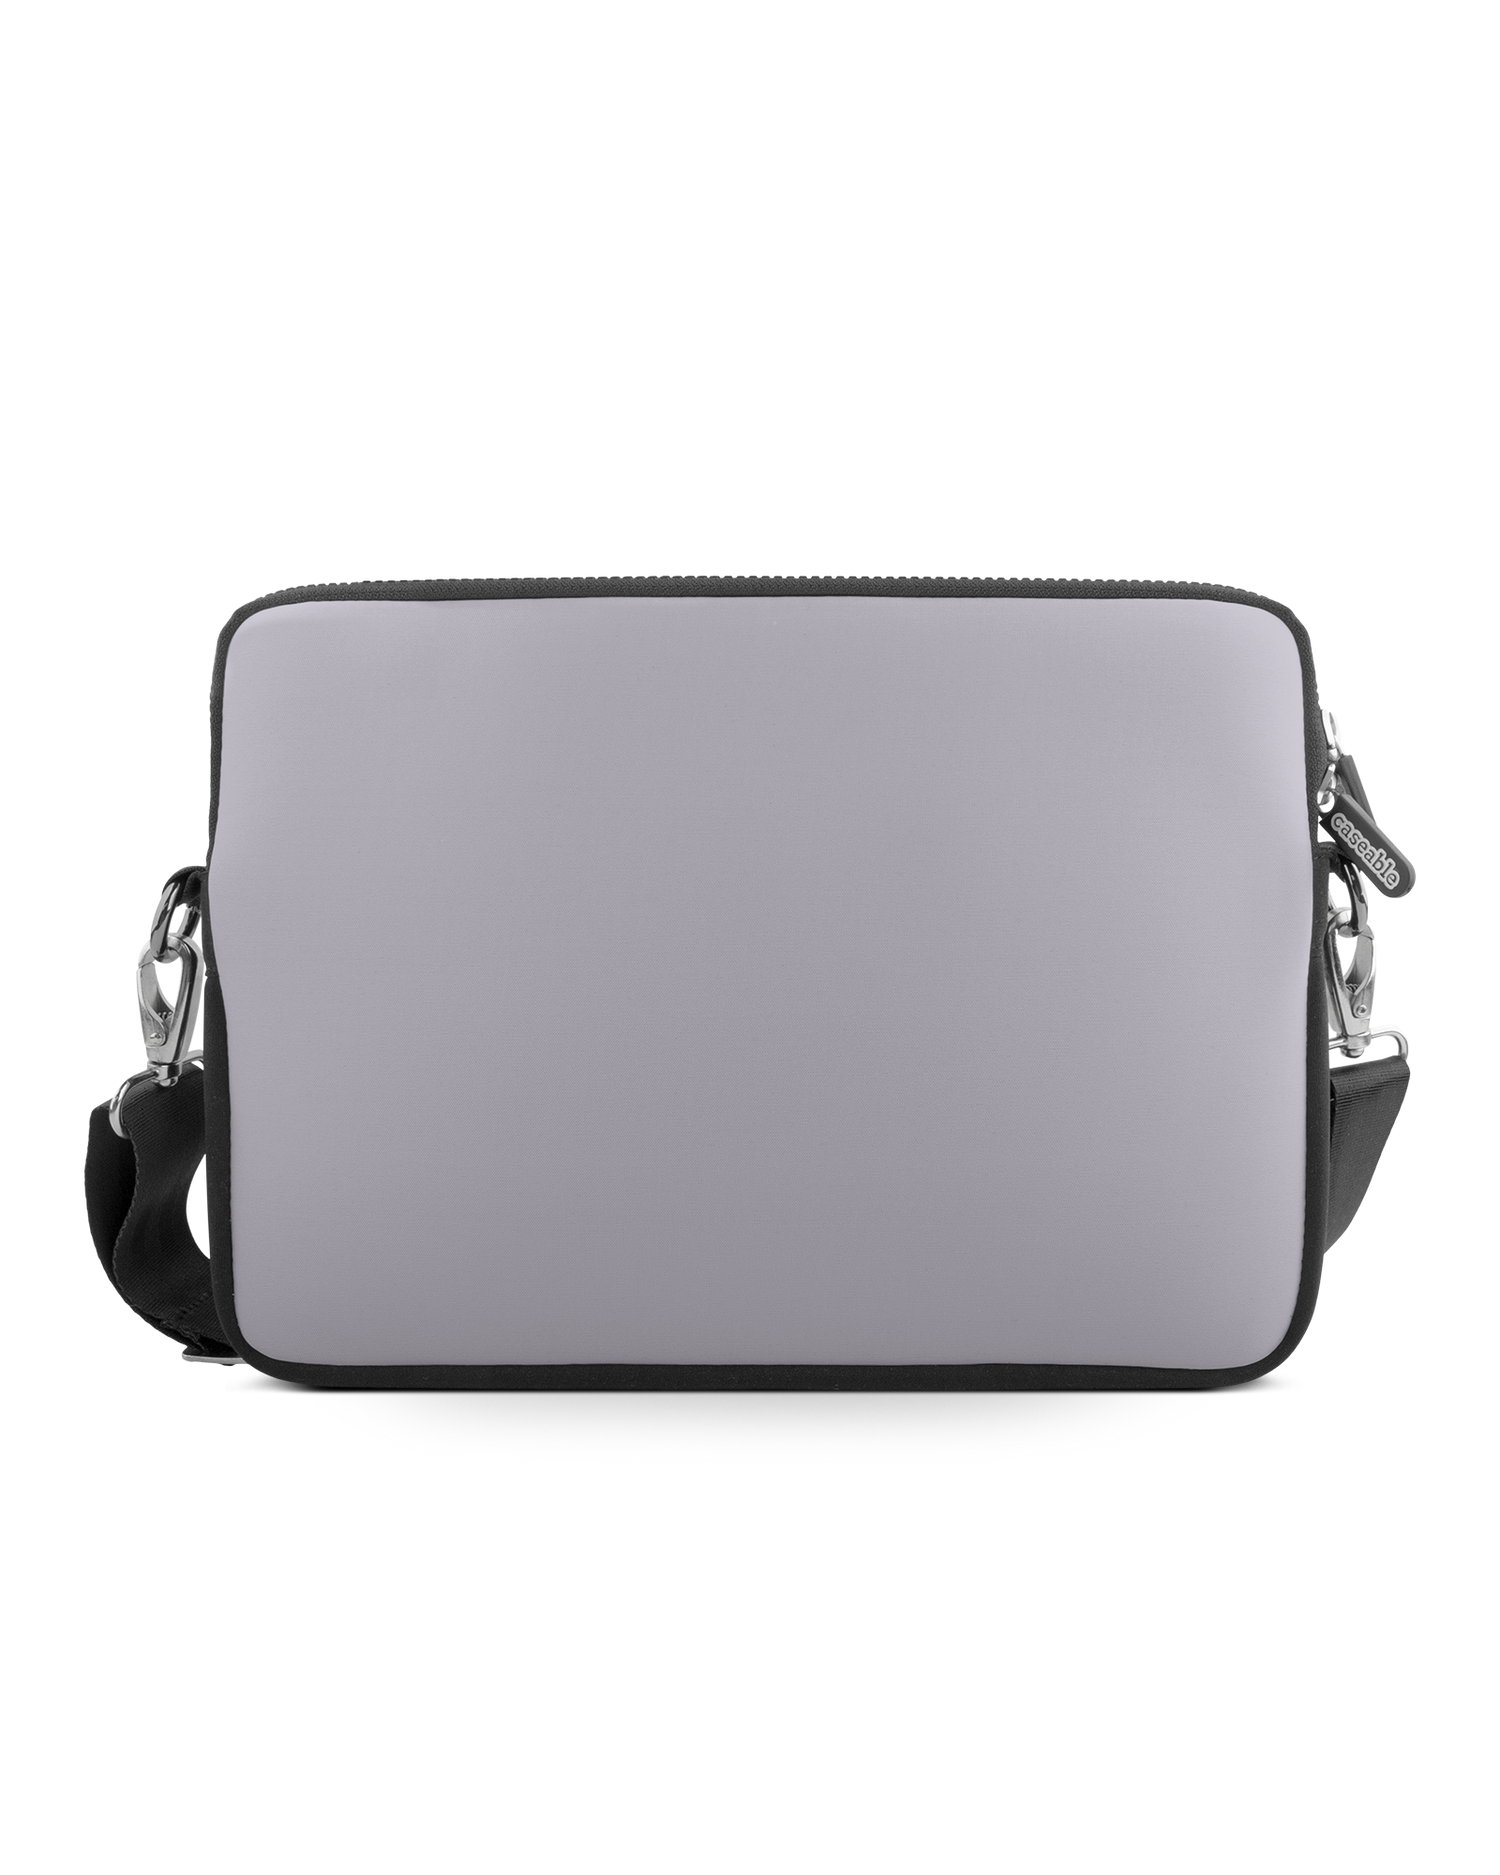 LIGHT PURPLE Premium Laptop Bag 13 inch: Front View